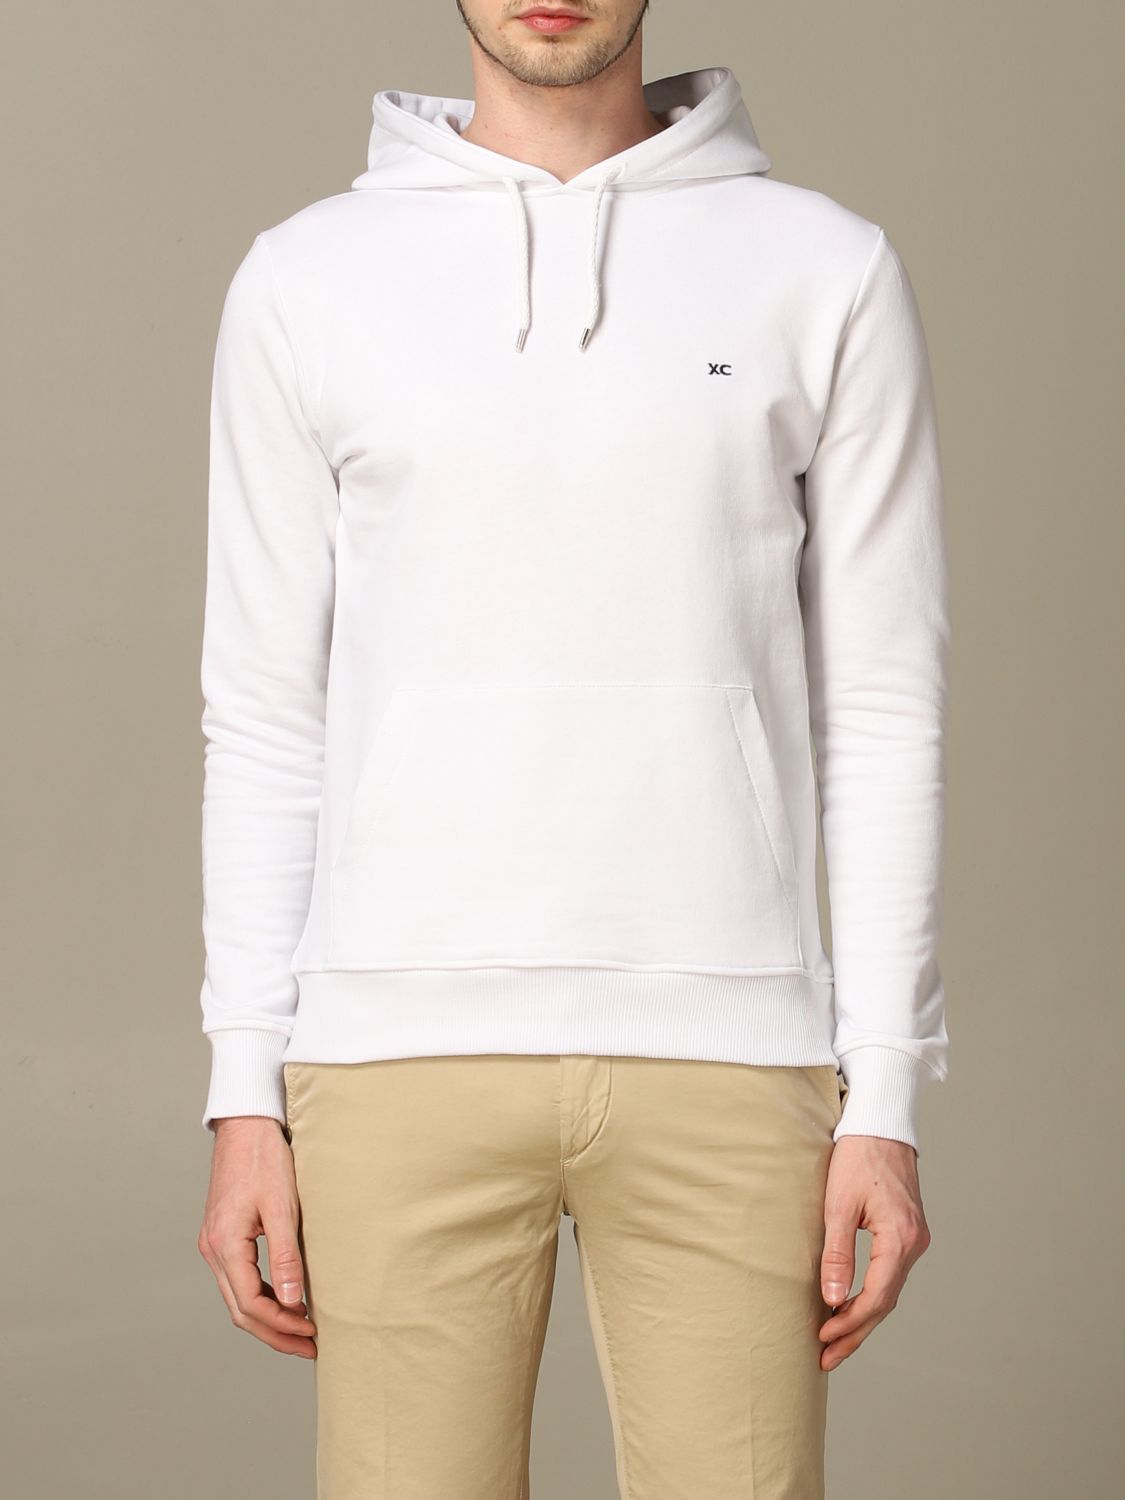 Xc Sweatshirt XC Men colour White